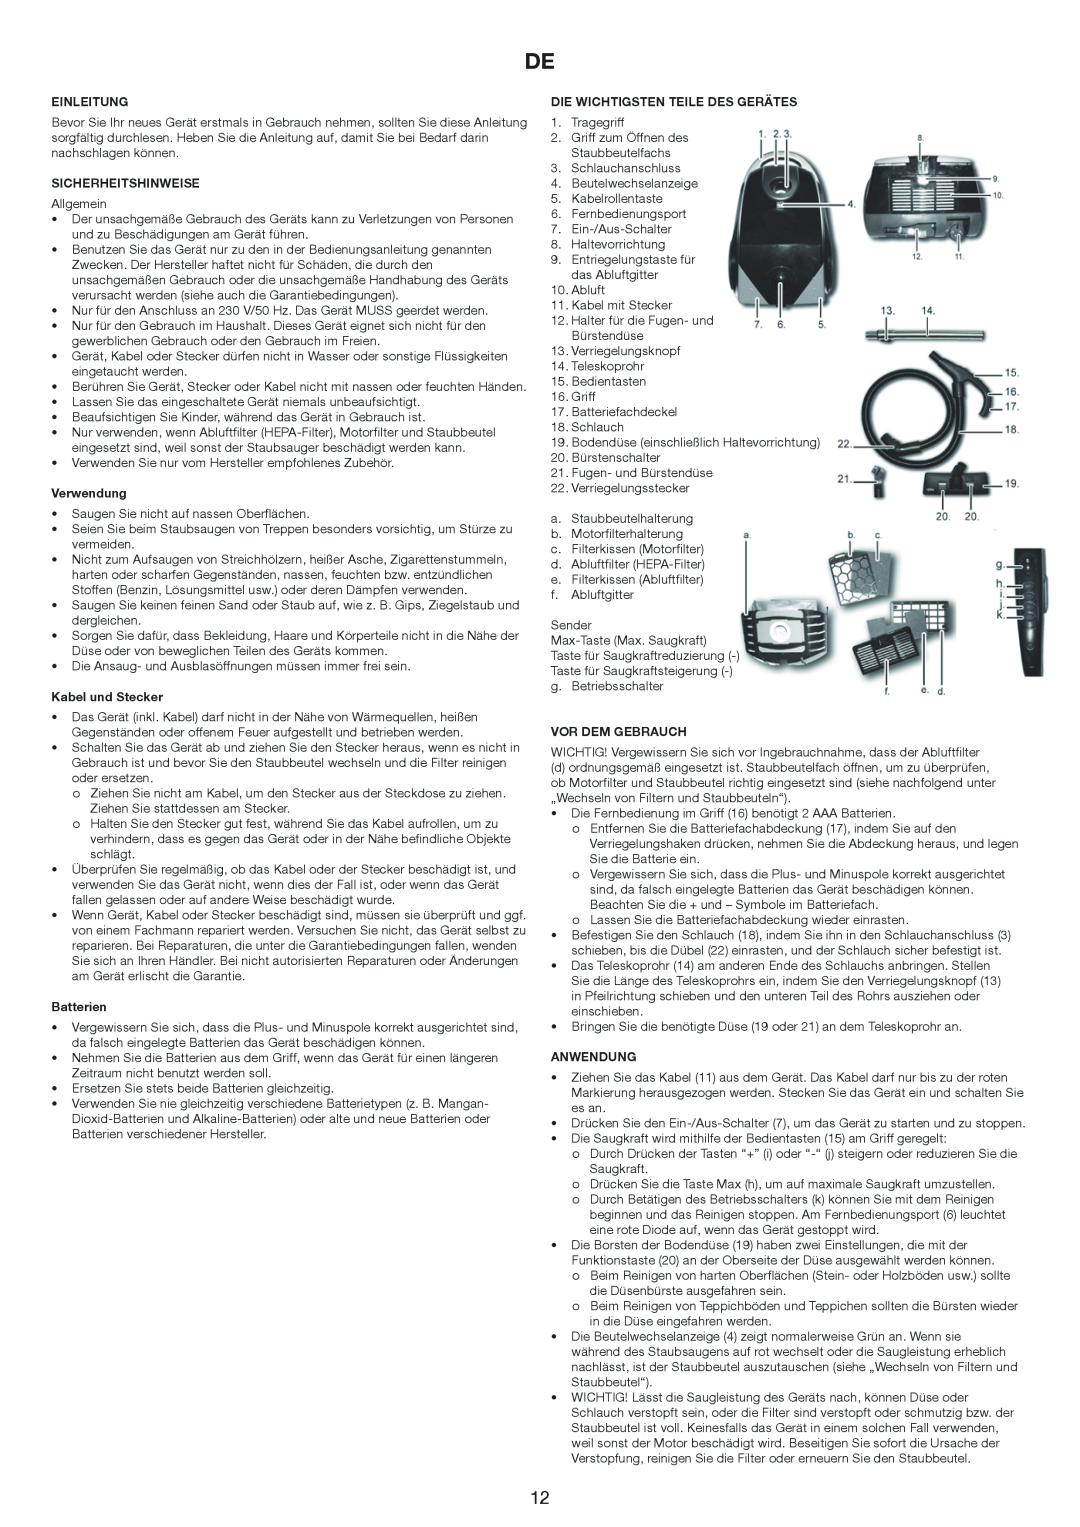 Melissa 640-174 Einleitung, Sicherheitshinweise, Verwendung, Kabel und Stecker, Batterien, Vor Dem Gebrauch, Anwendung 